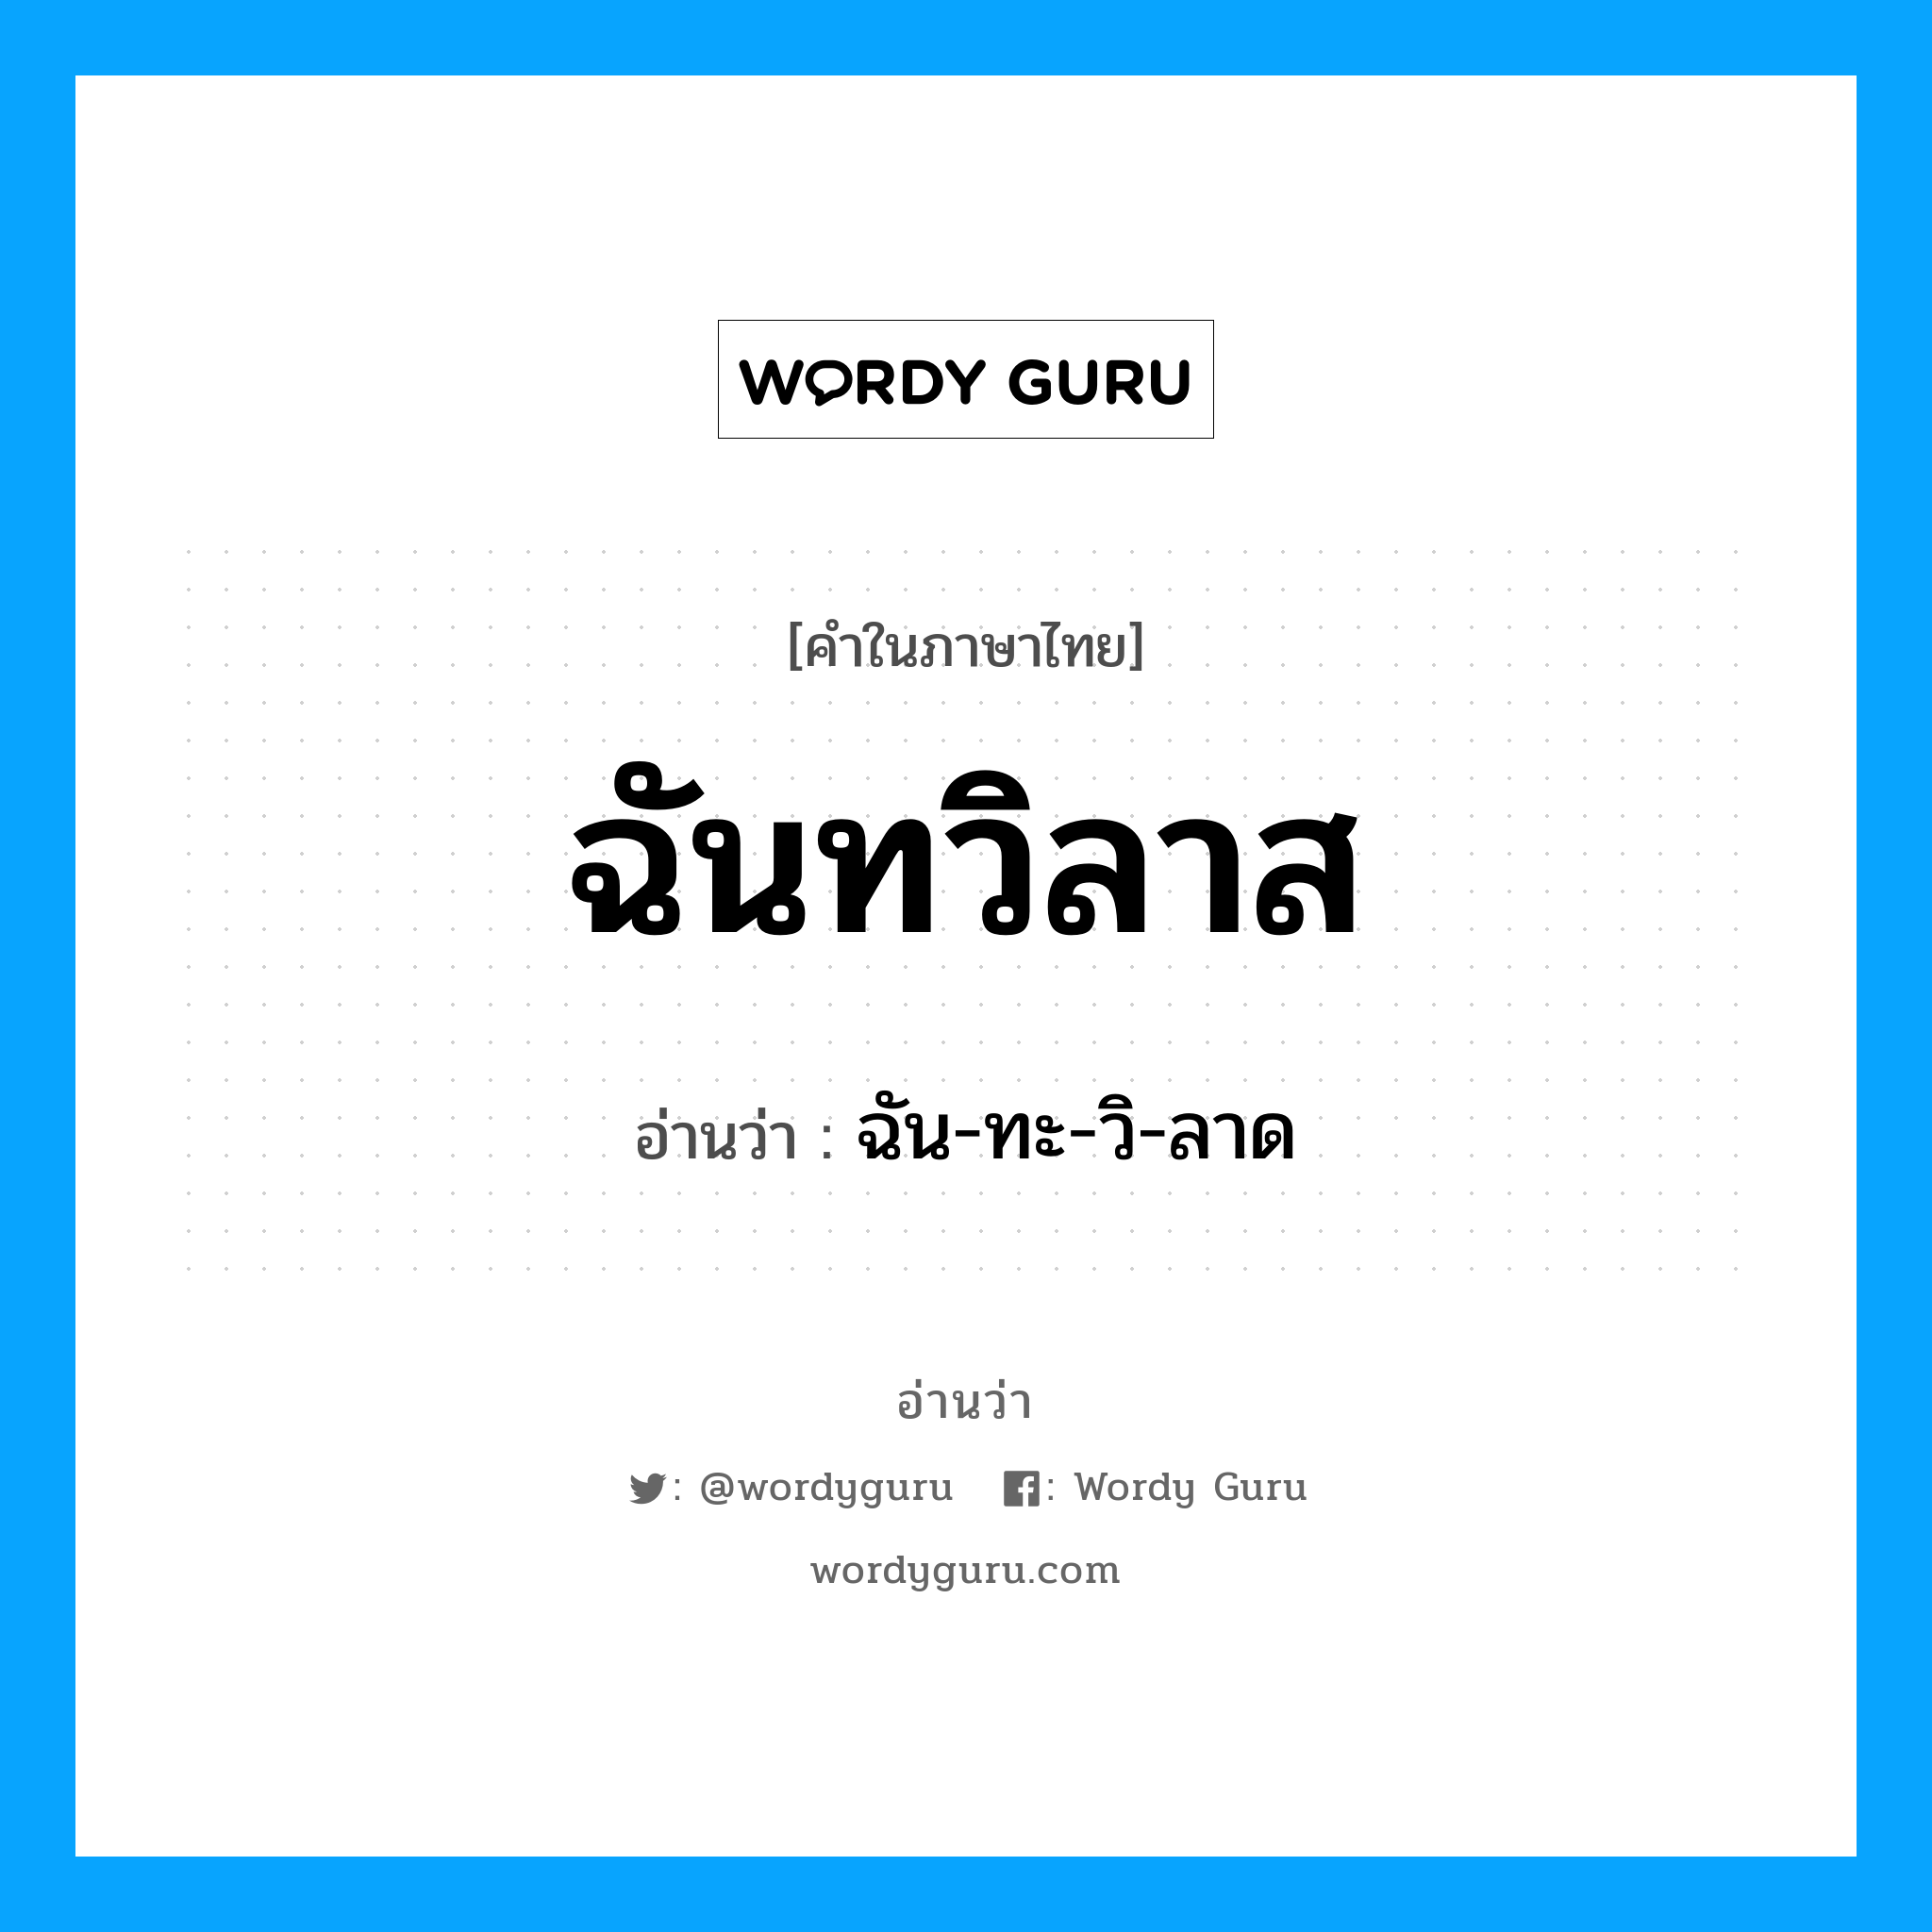 ฉัน-ทะ-วิ-ลาด เป็นคำอ่านของคำไหน?, คำในภาษาไทย ฉัน-ทะ-วิ-ลาด อ่านว่า ฉันทวิลาส